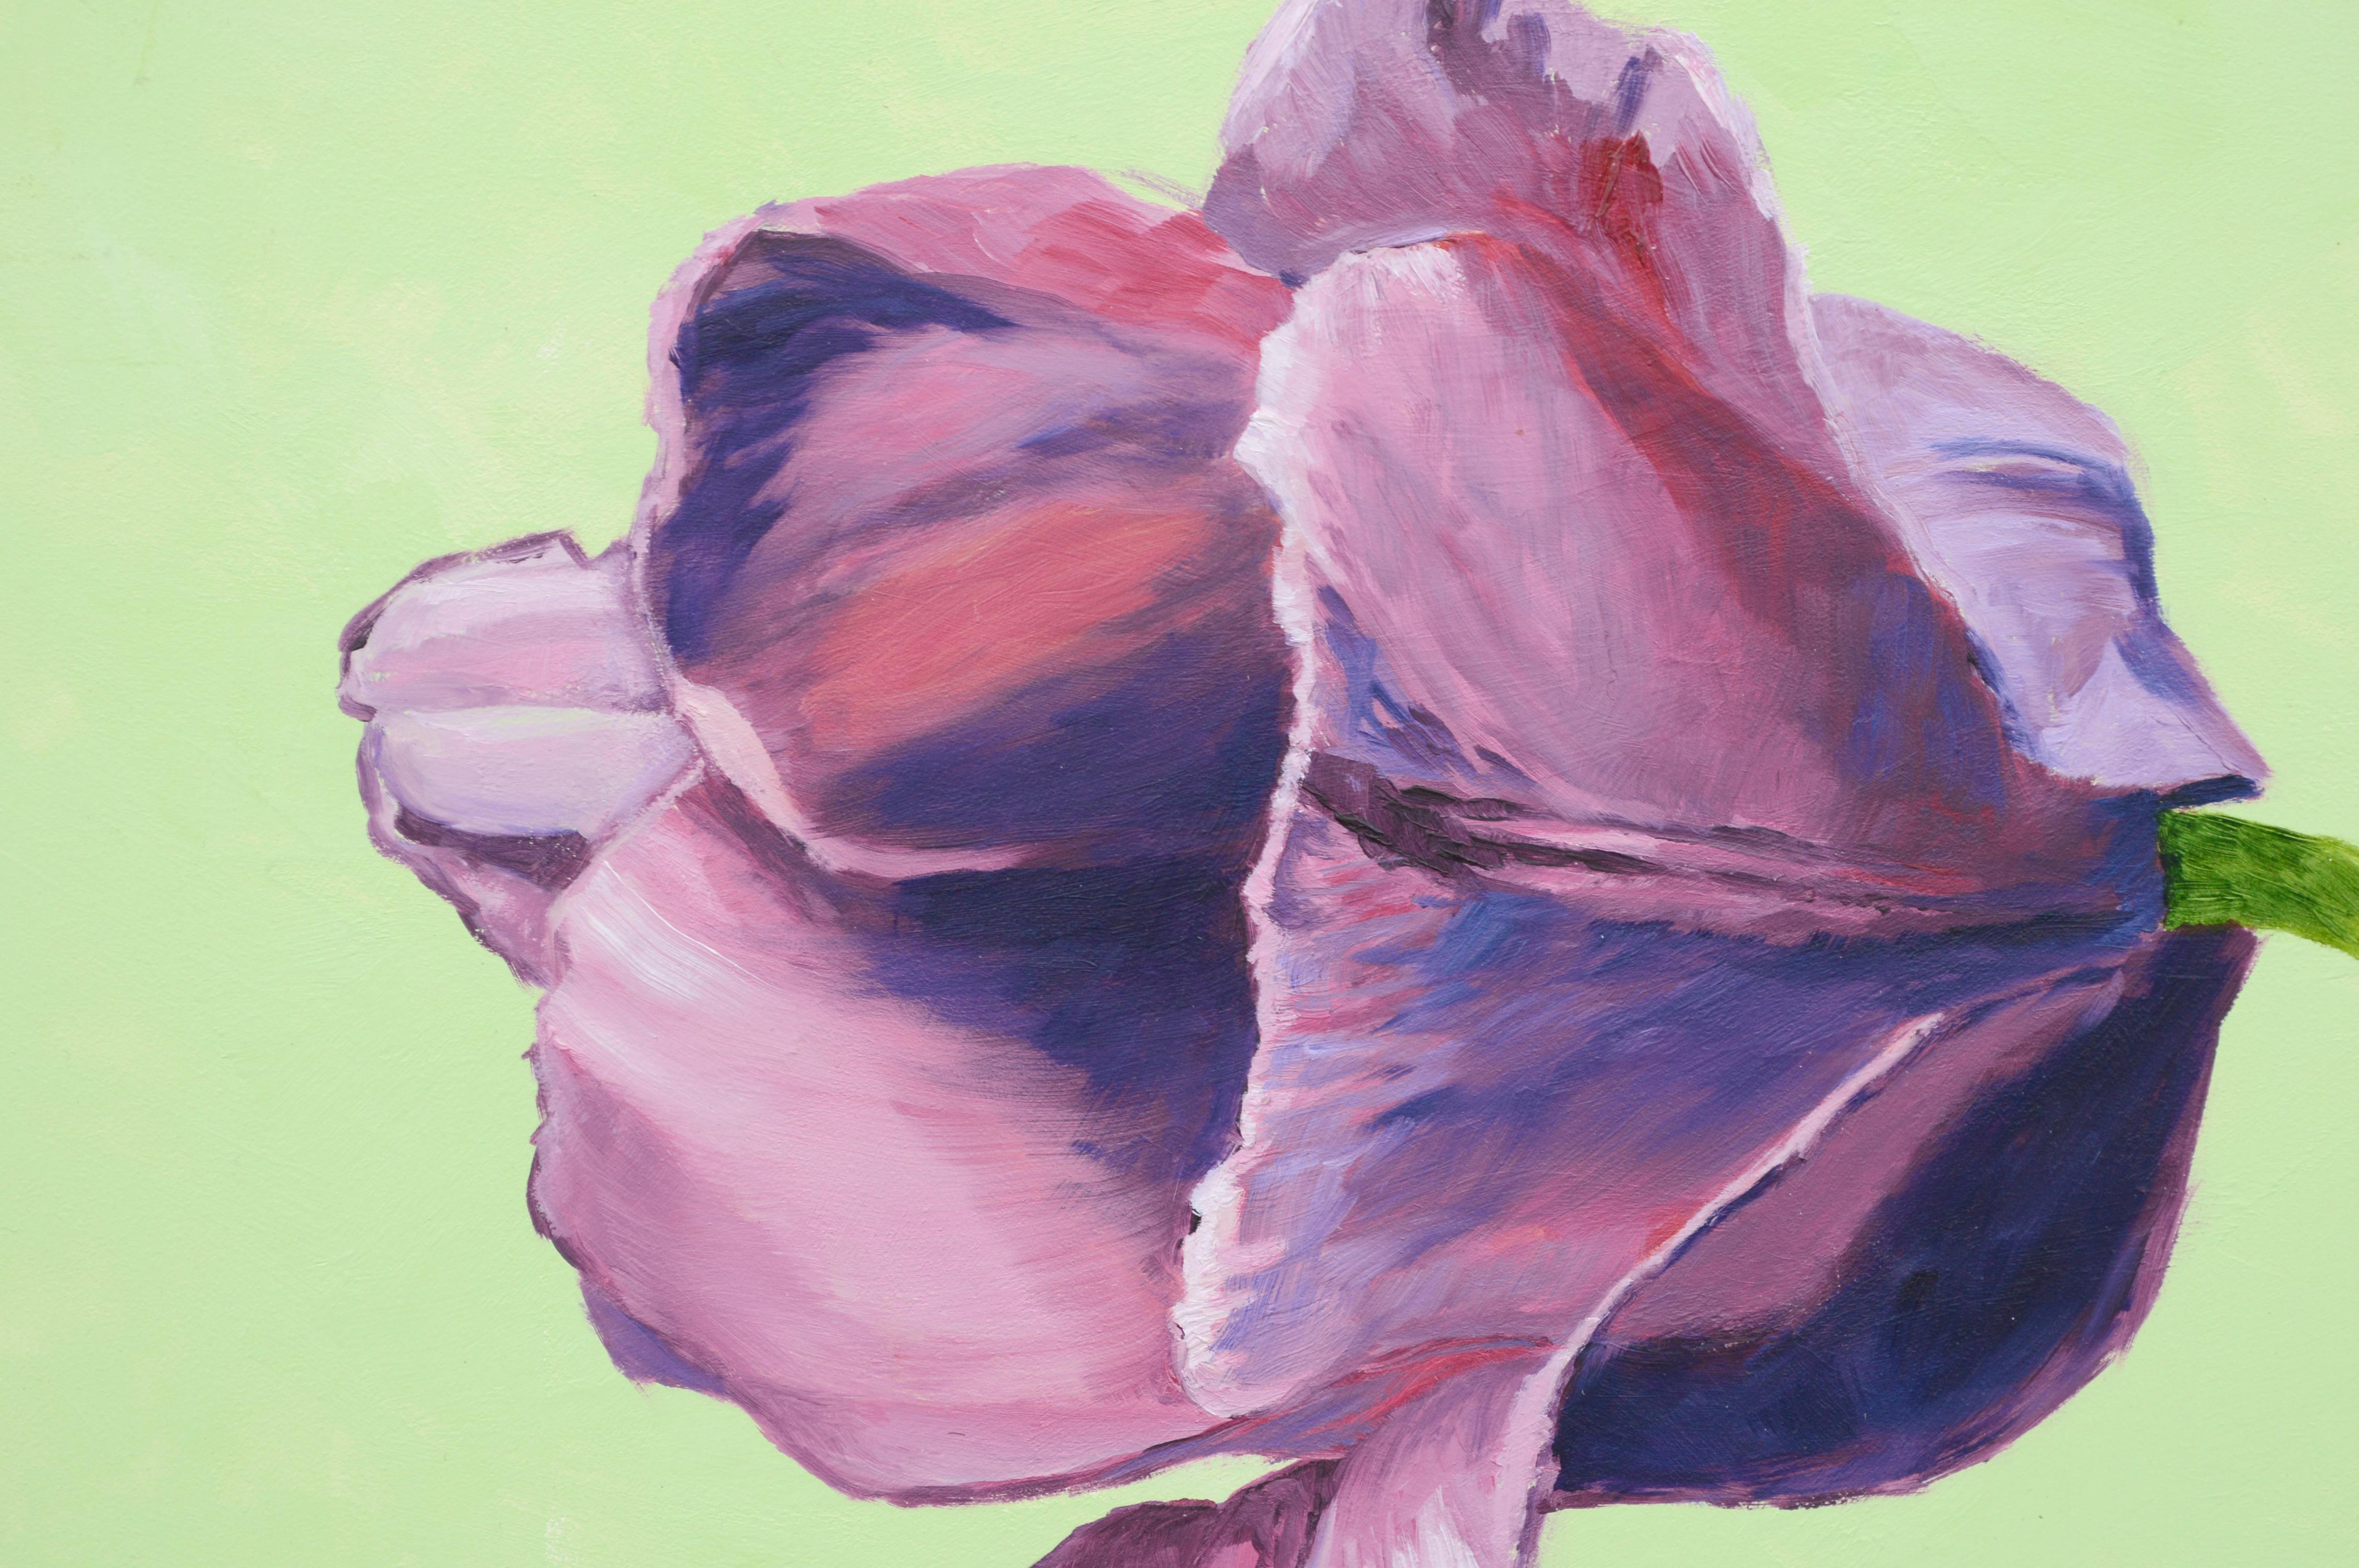 Magenta Tulip - Still Life - Painting by Susan Reinier